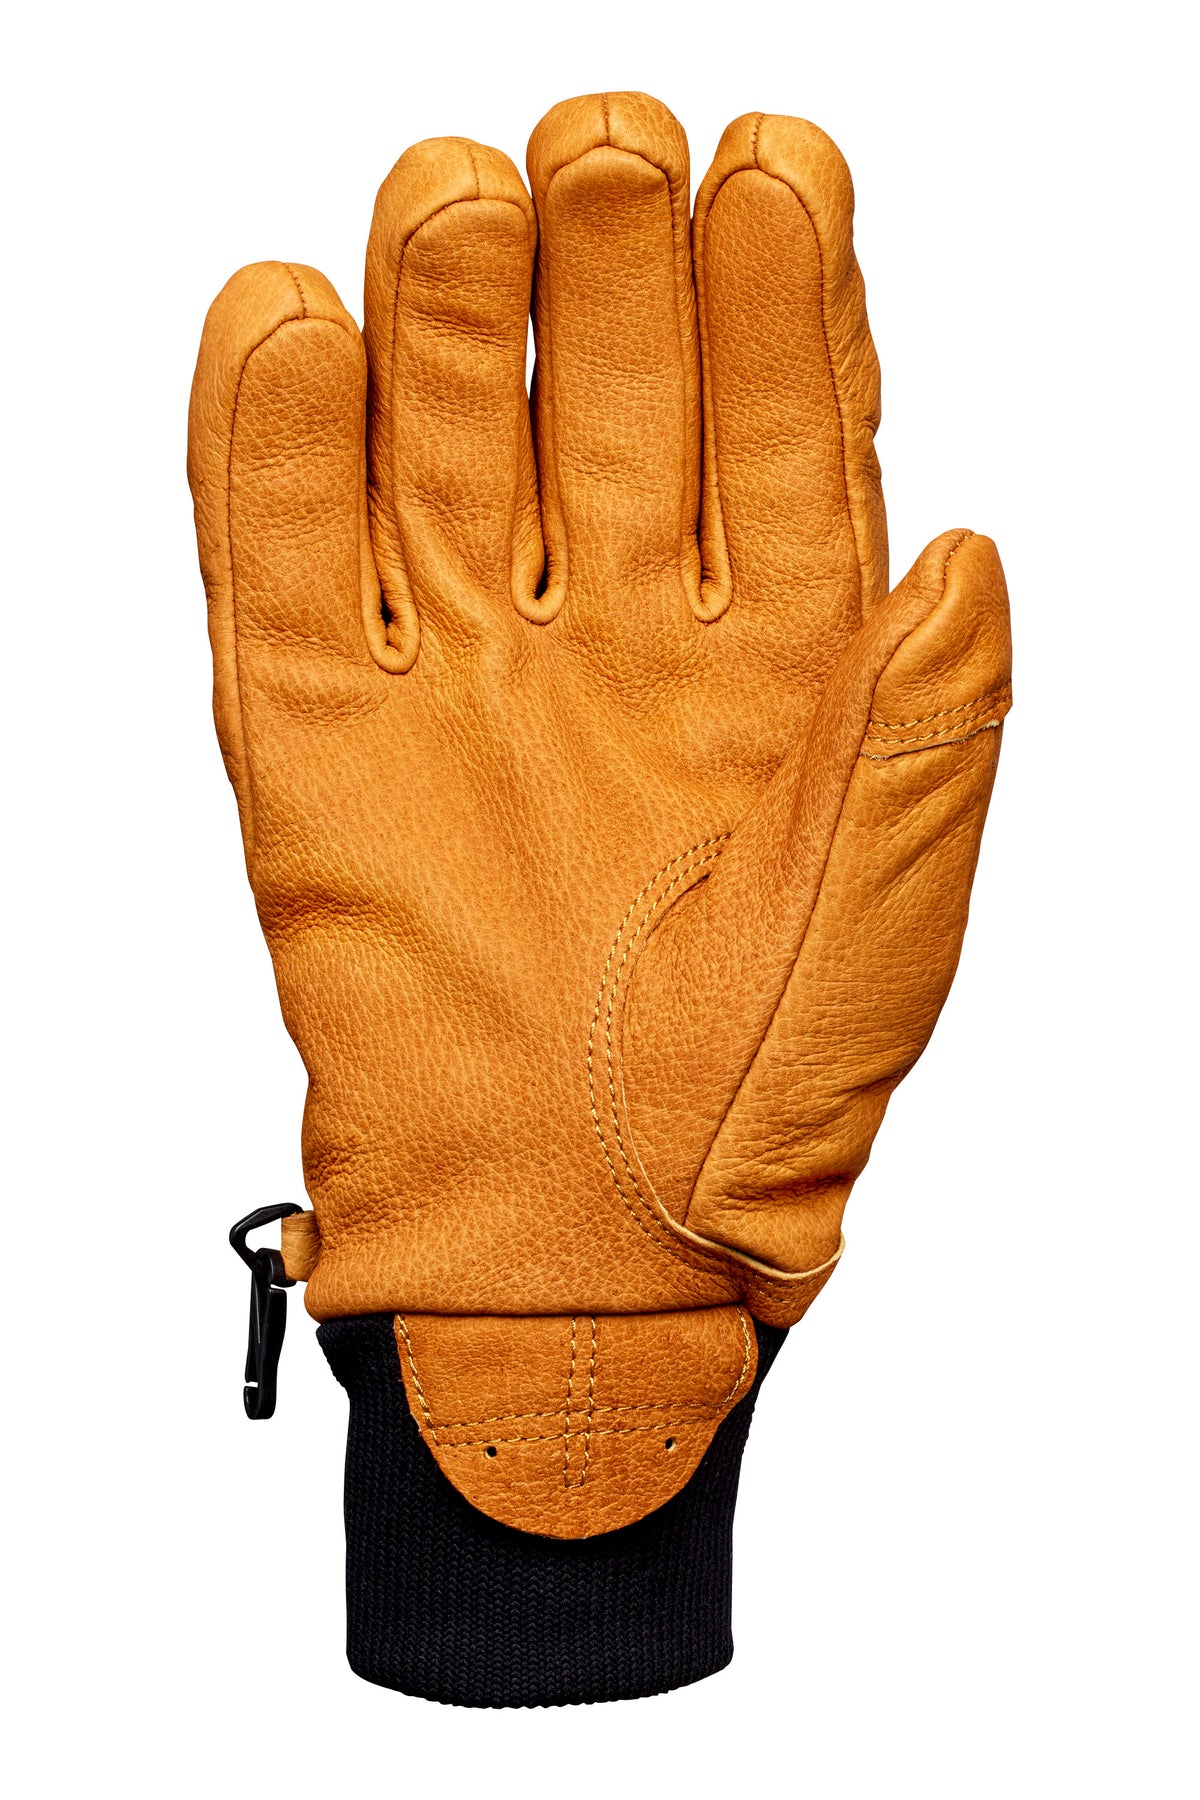 2022 Magarac Glove